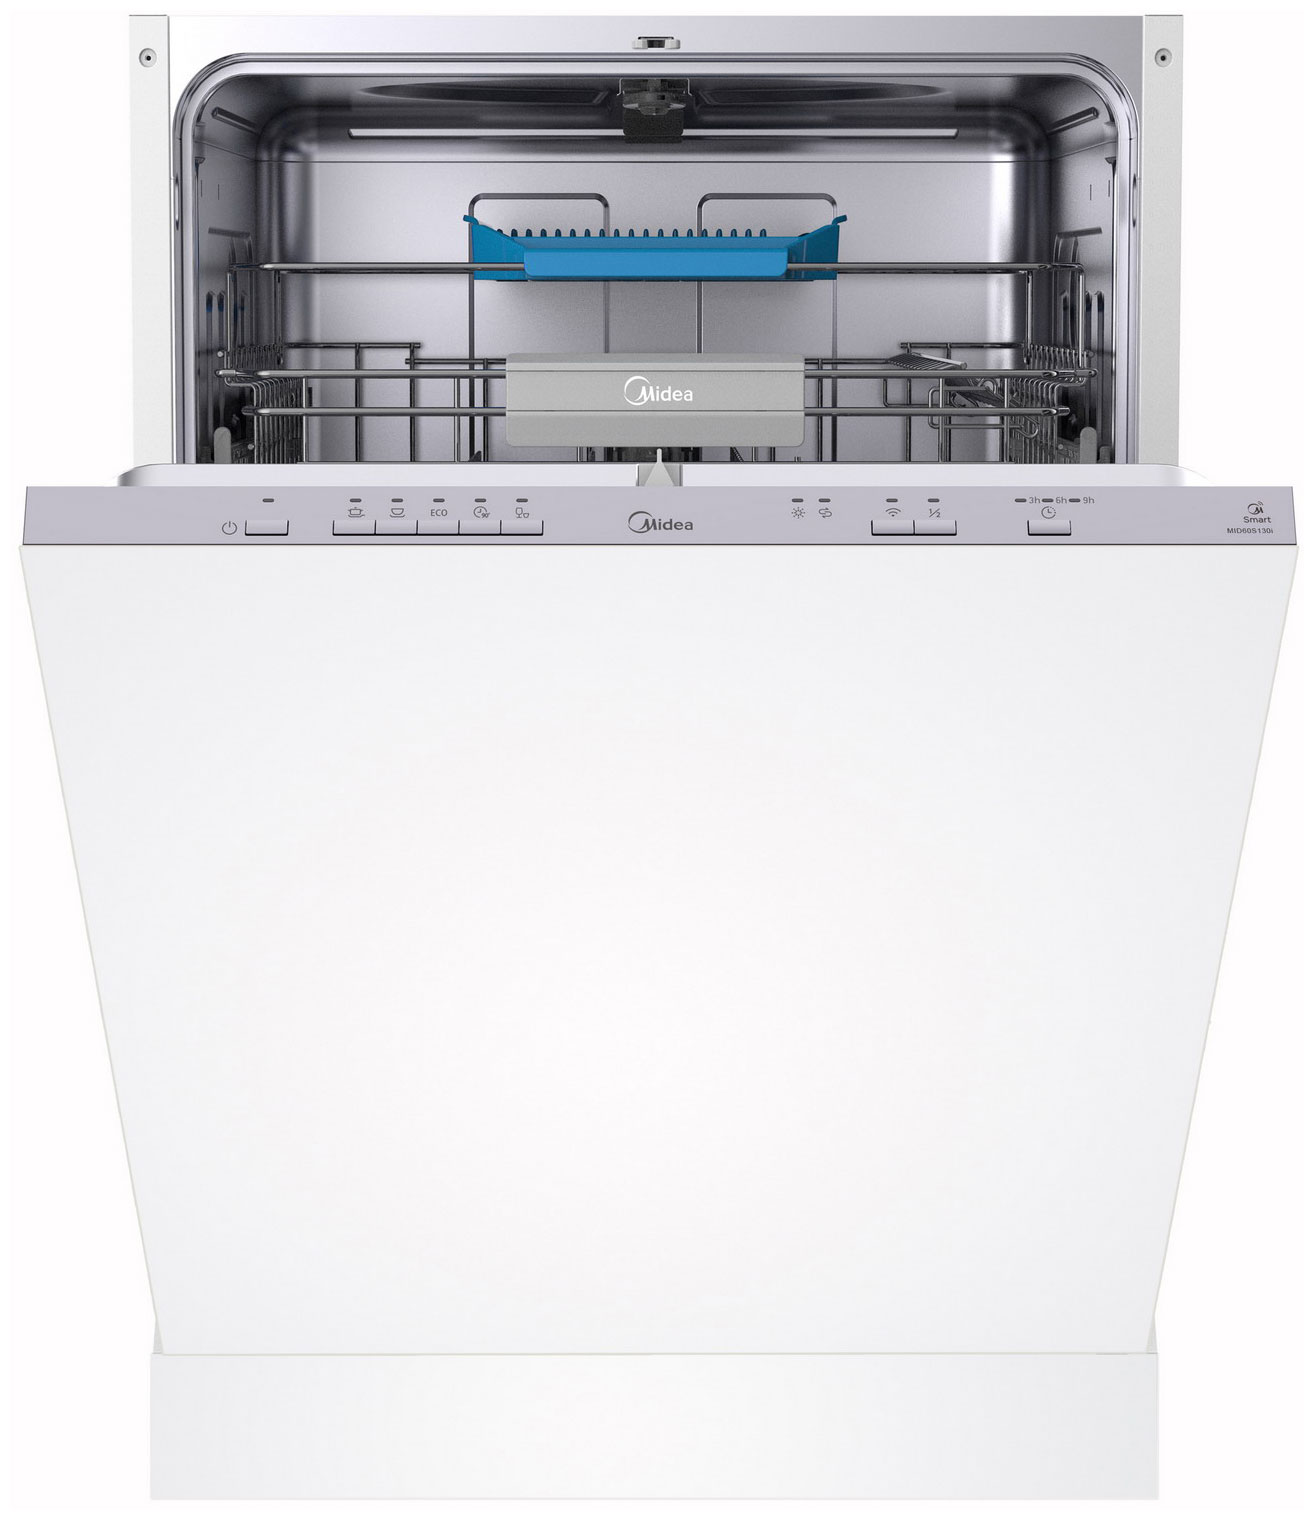 Встраиваемая посудомоечная машина Midea MID60S130i встраиваемая посудомоечная машина midea mid45s340i